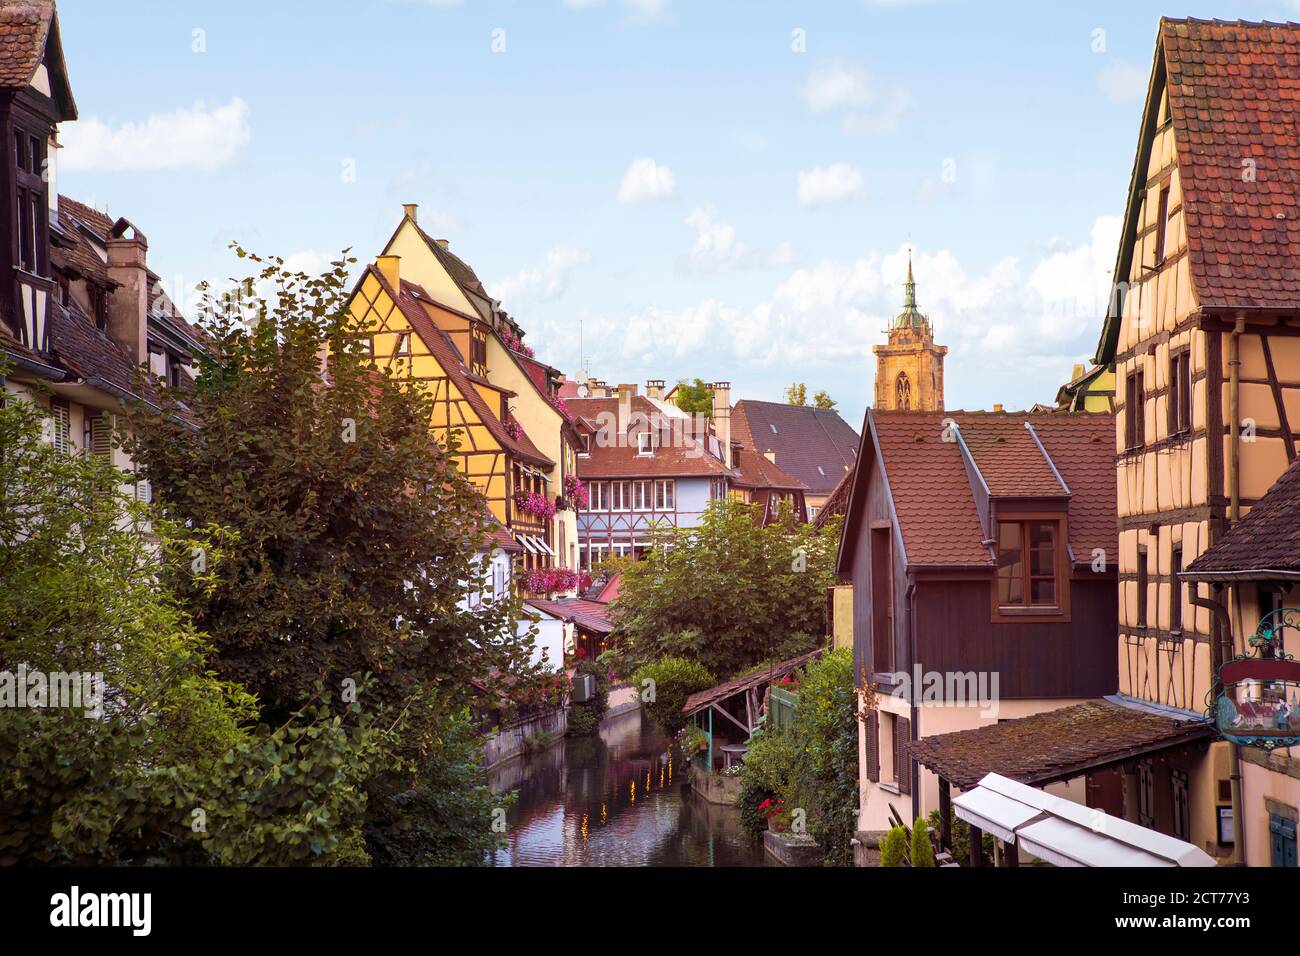 Kleines Venedig in Colmar. Berühmtes Wahrzeichen, romantisches Dorf mit Fachwerkhäusern am Ufer des Kanals, Kirchturm im Hintergrund. Summert Stockfoto